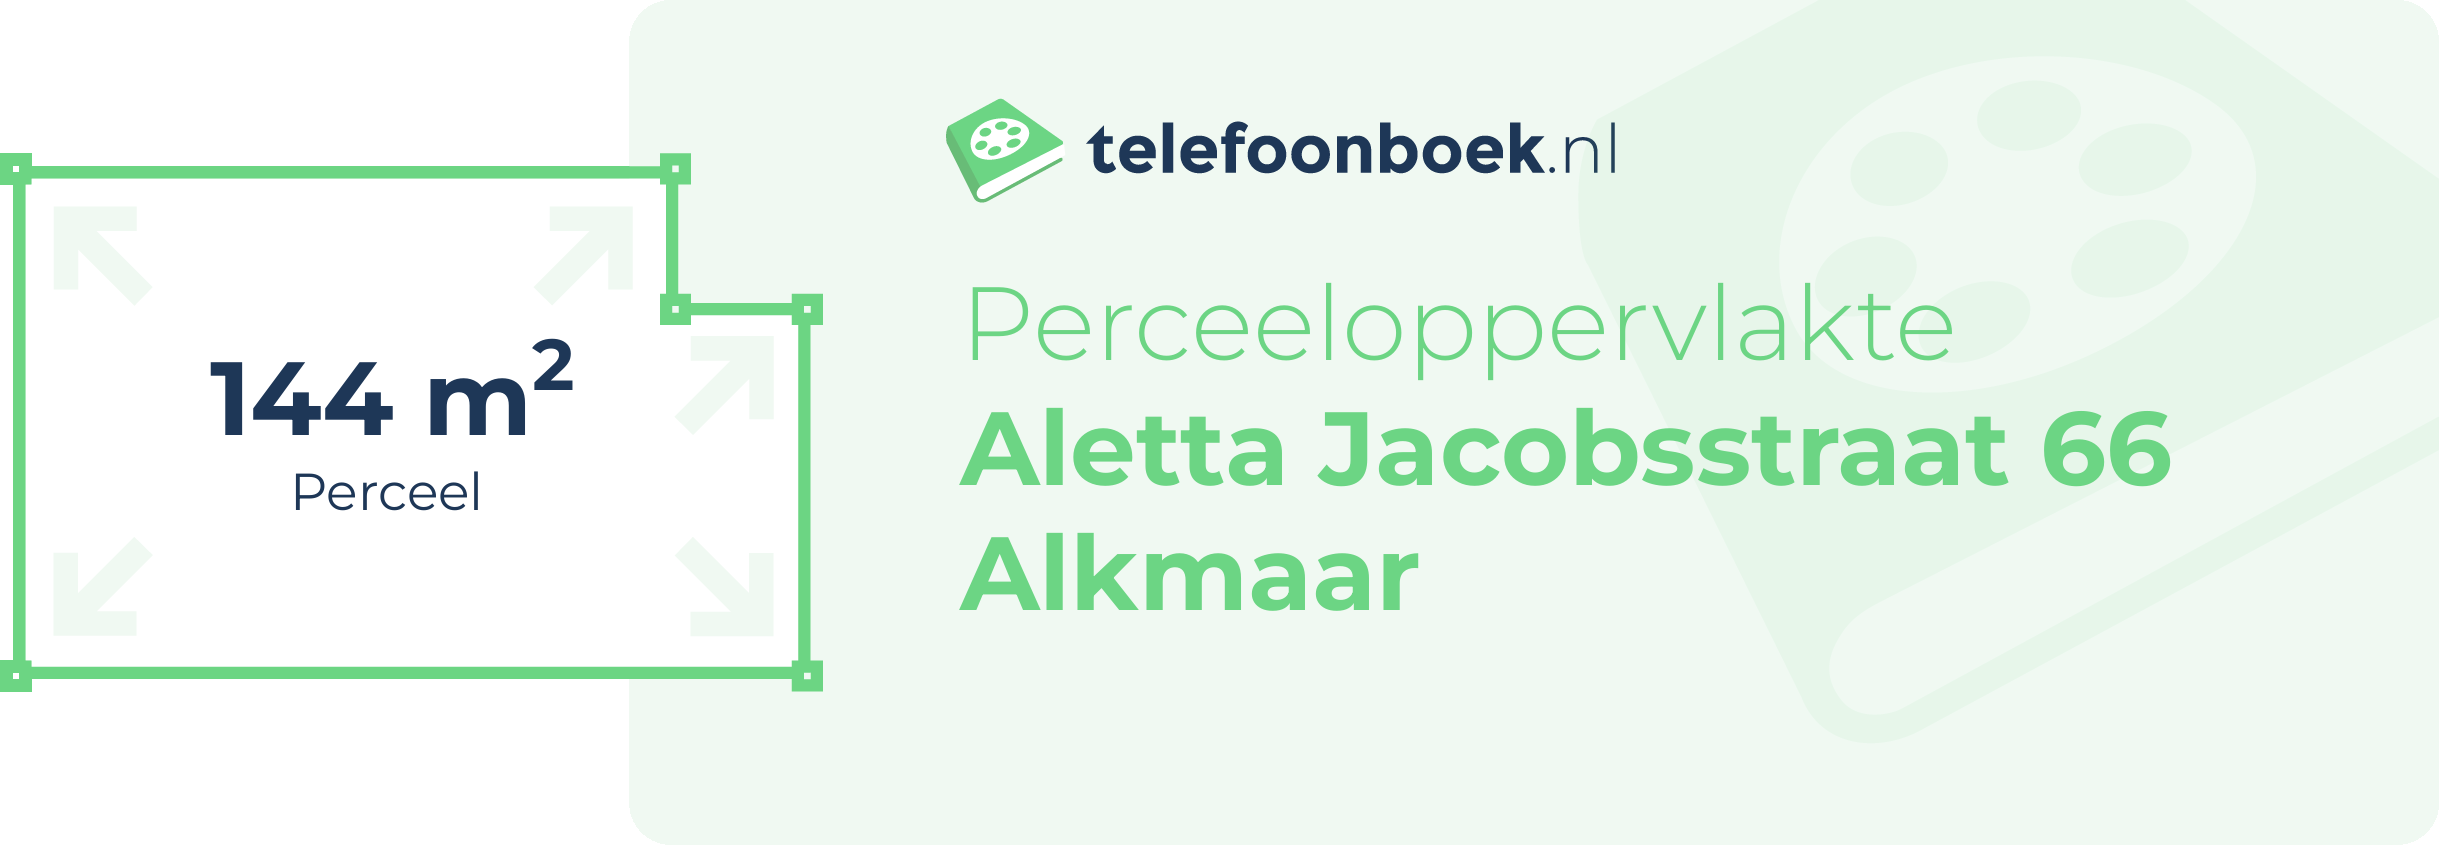 Perceeloppervlakte Aletta Jacobsstraat 66 Alkmaar